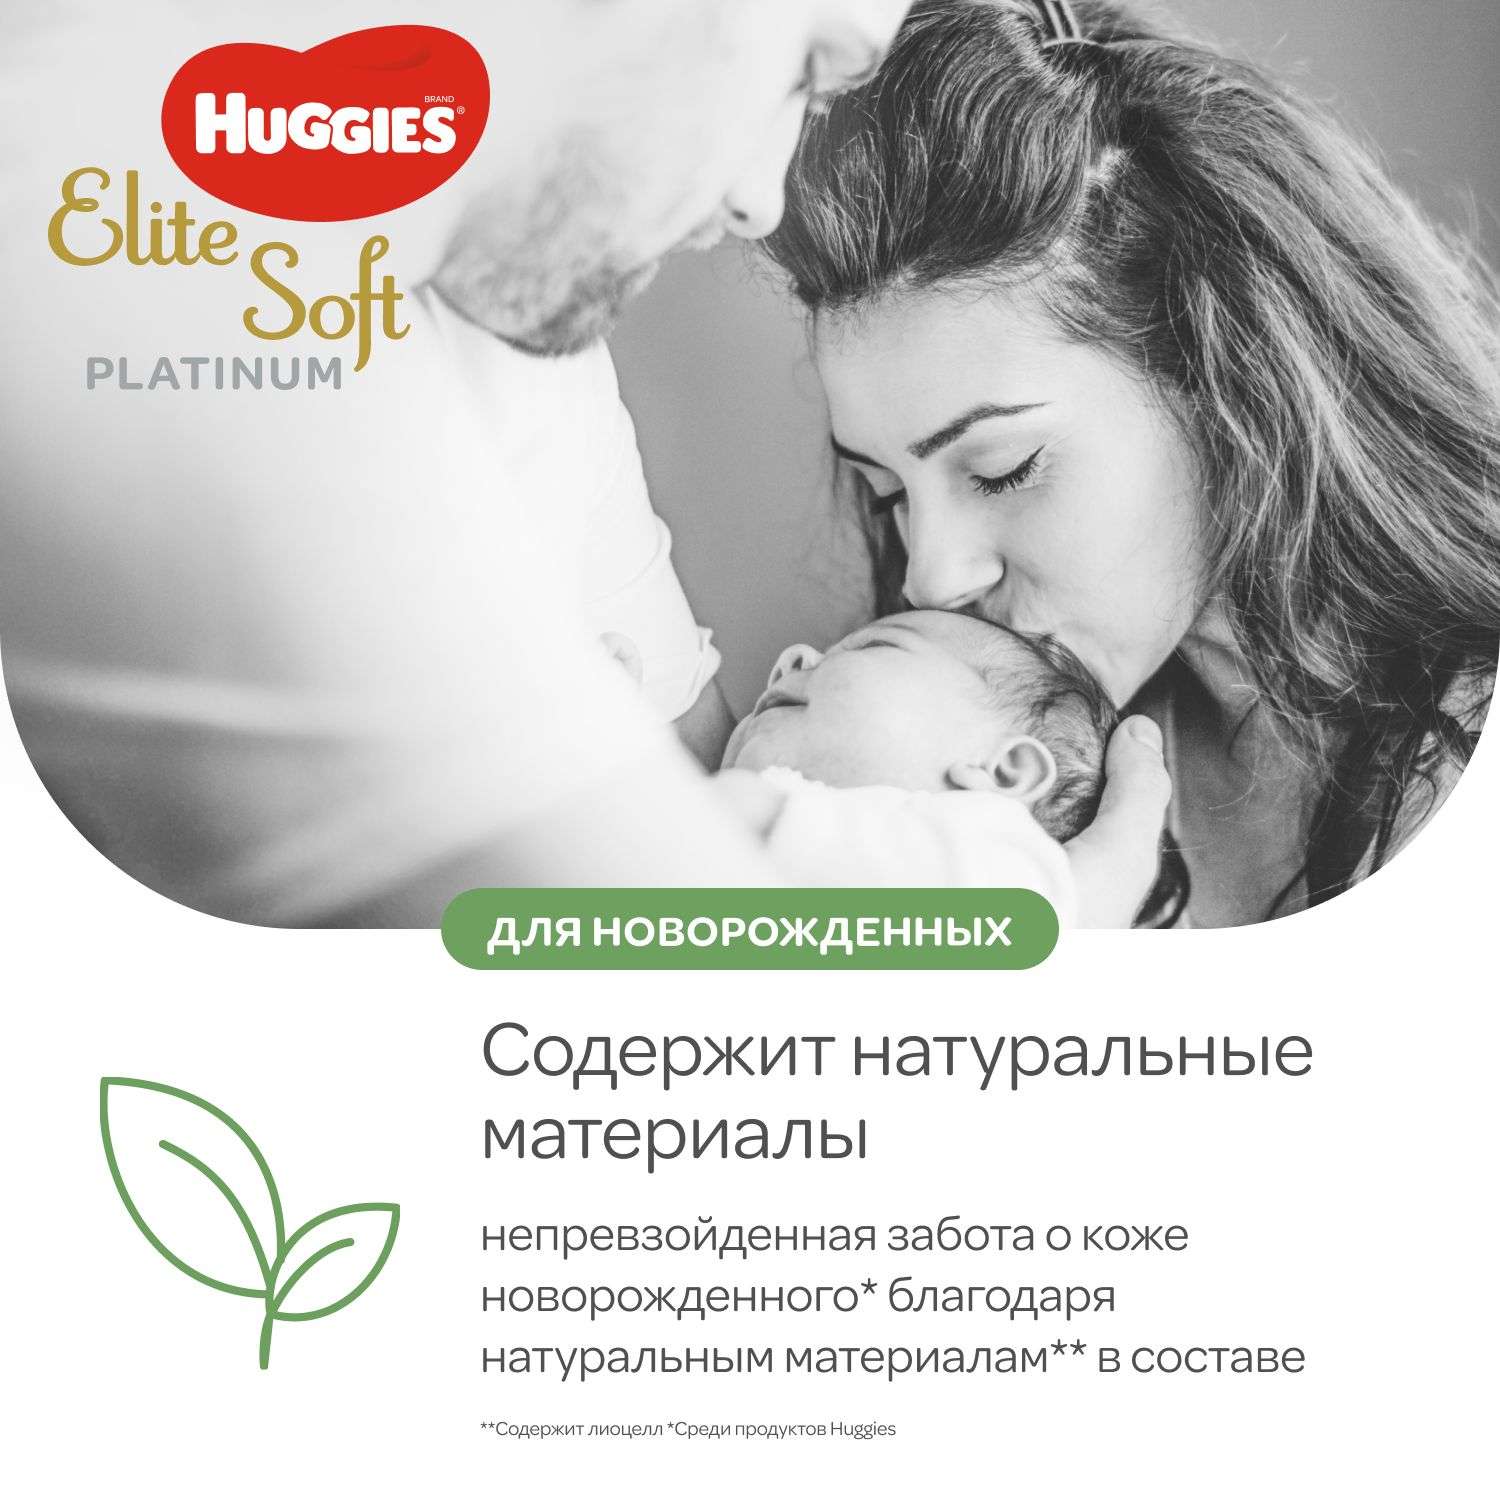 Подгузники Huggies Elite Soft Platinum для новорожденных 1 до 5кг 90шт - фото 4